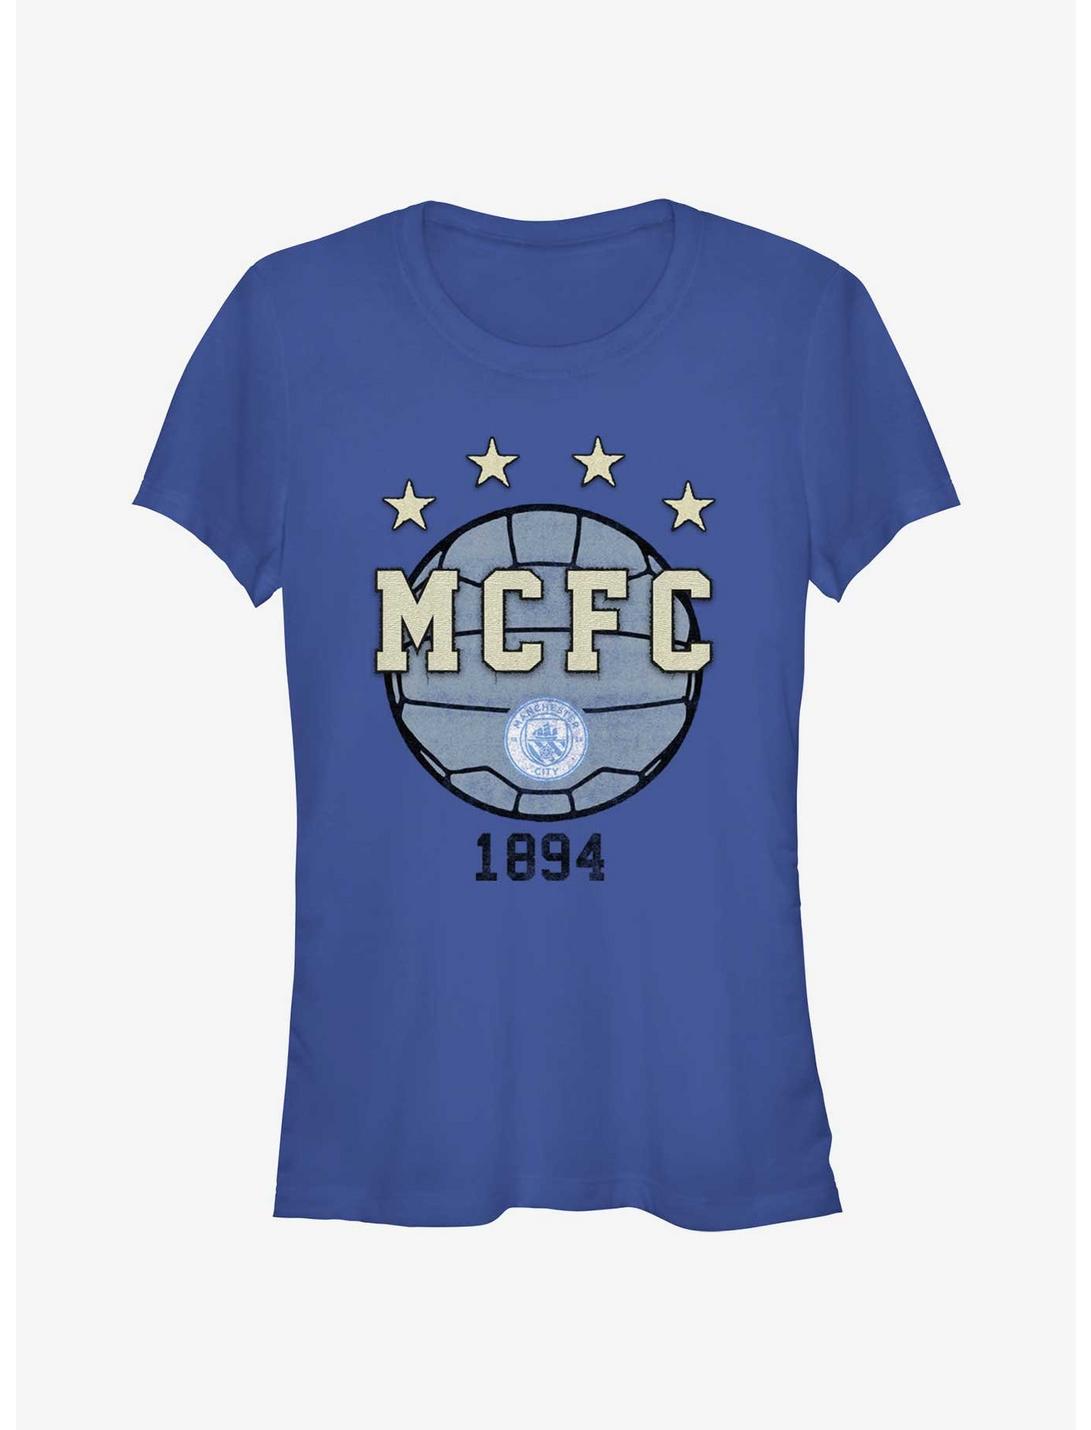 Premier League Manchester City F.C. Since 1894 Girls T-Shirt, ROYAL, hi-res